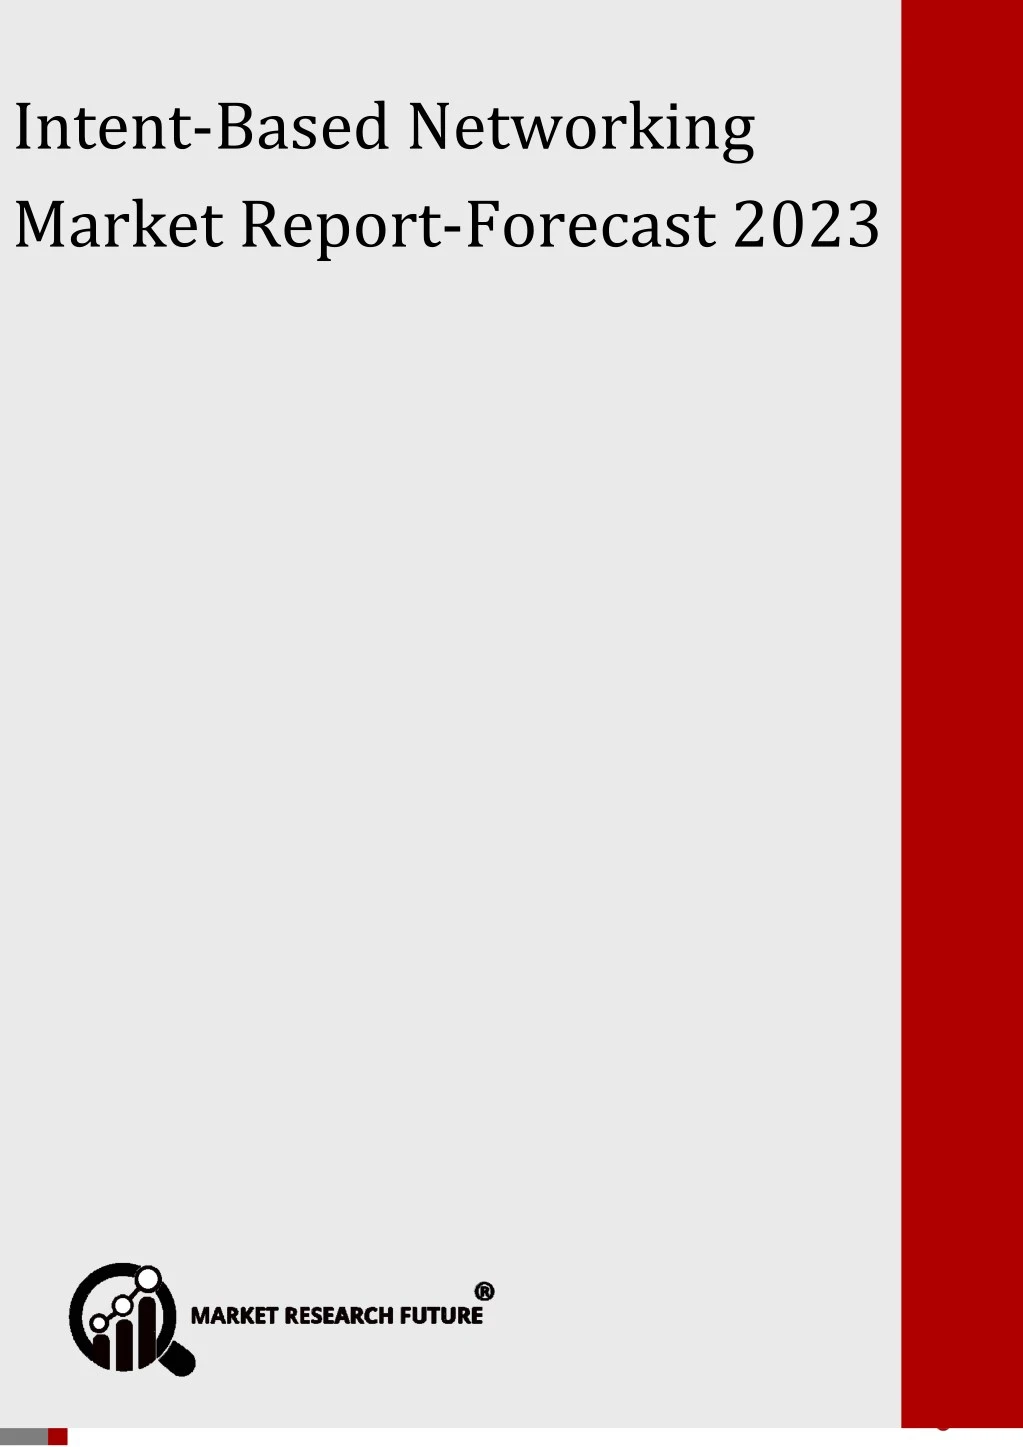 optical sorter market forecast 2023 intent based